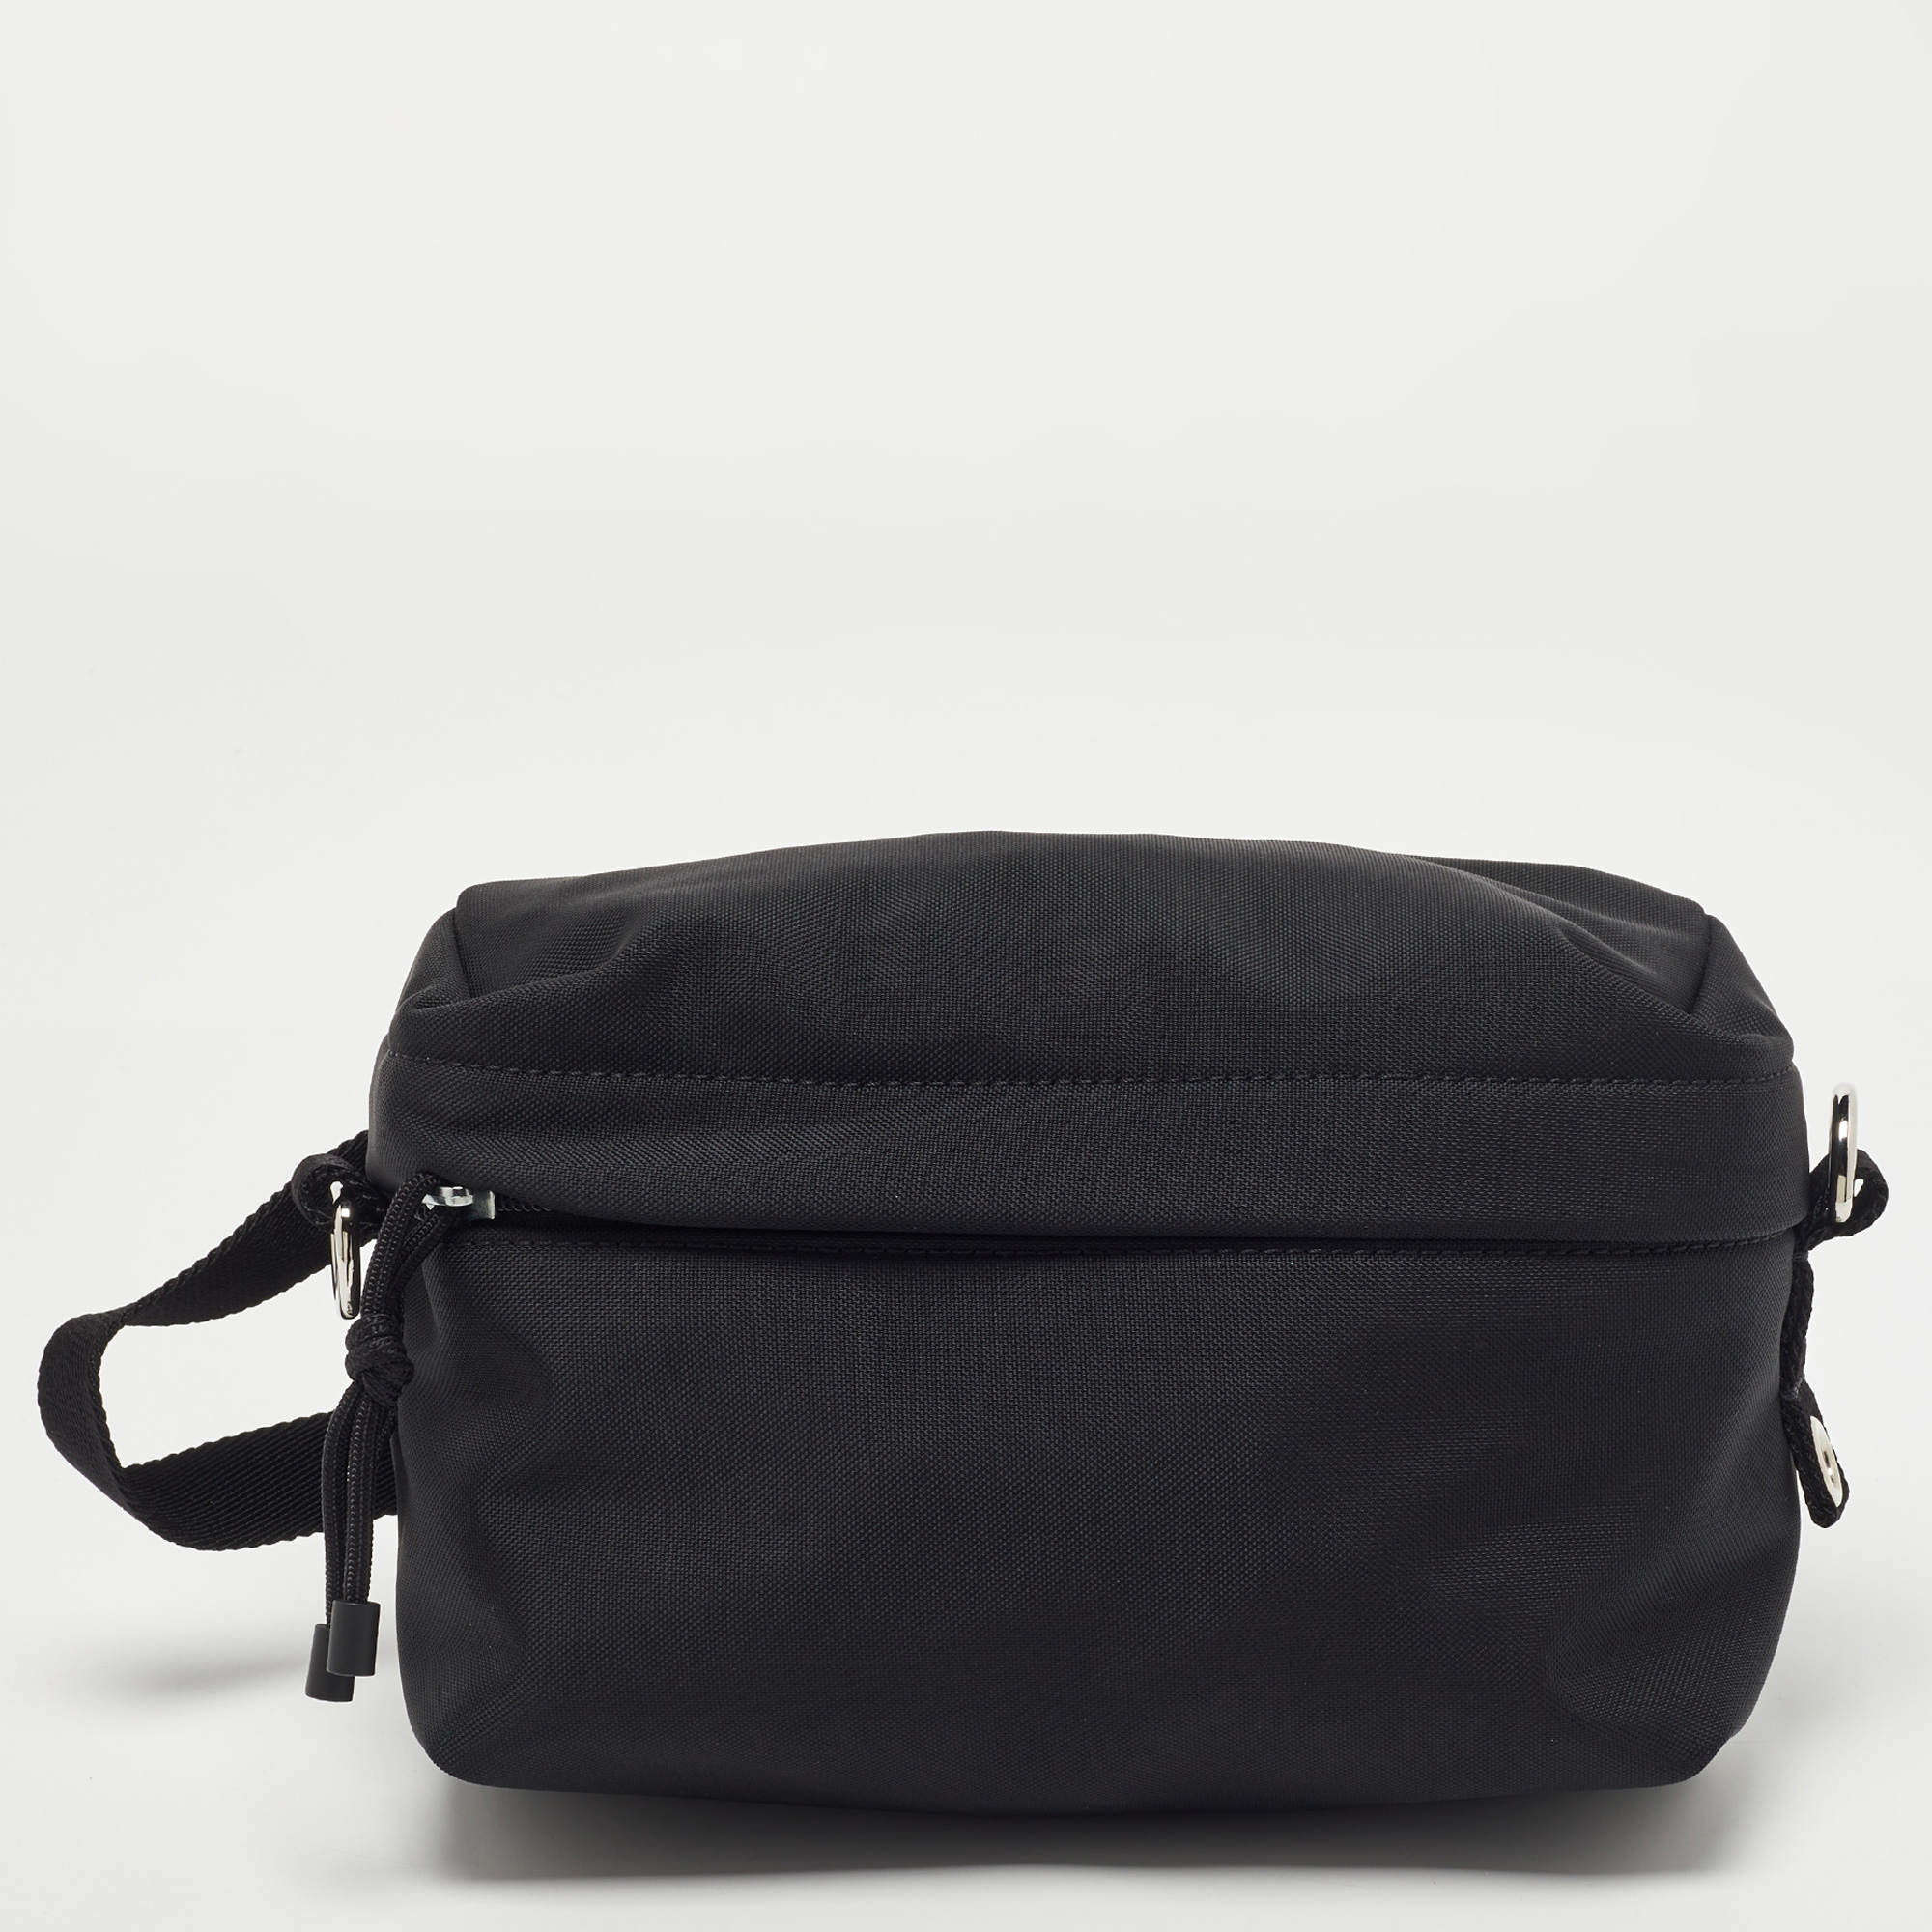 Valentino Black Nylon VLTN Front Pocket Messenger Bag